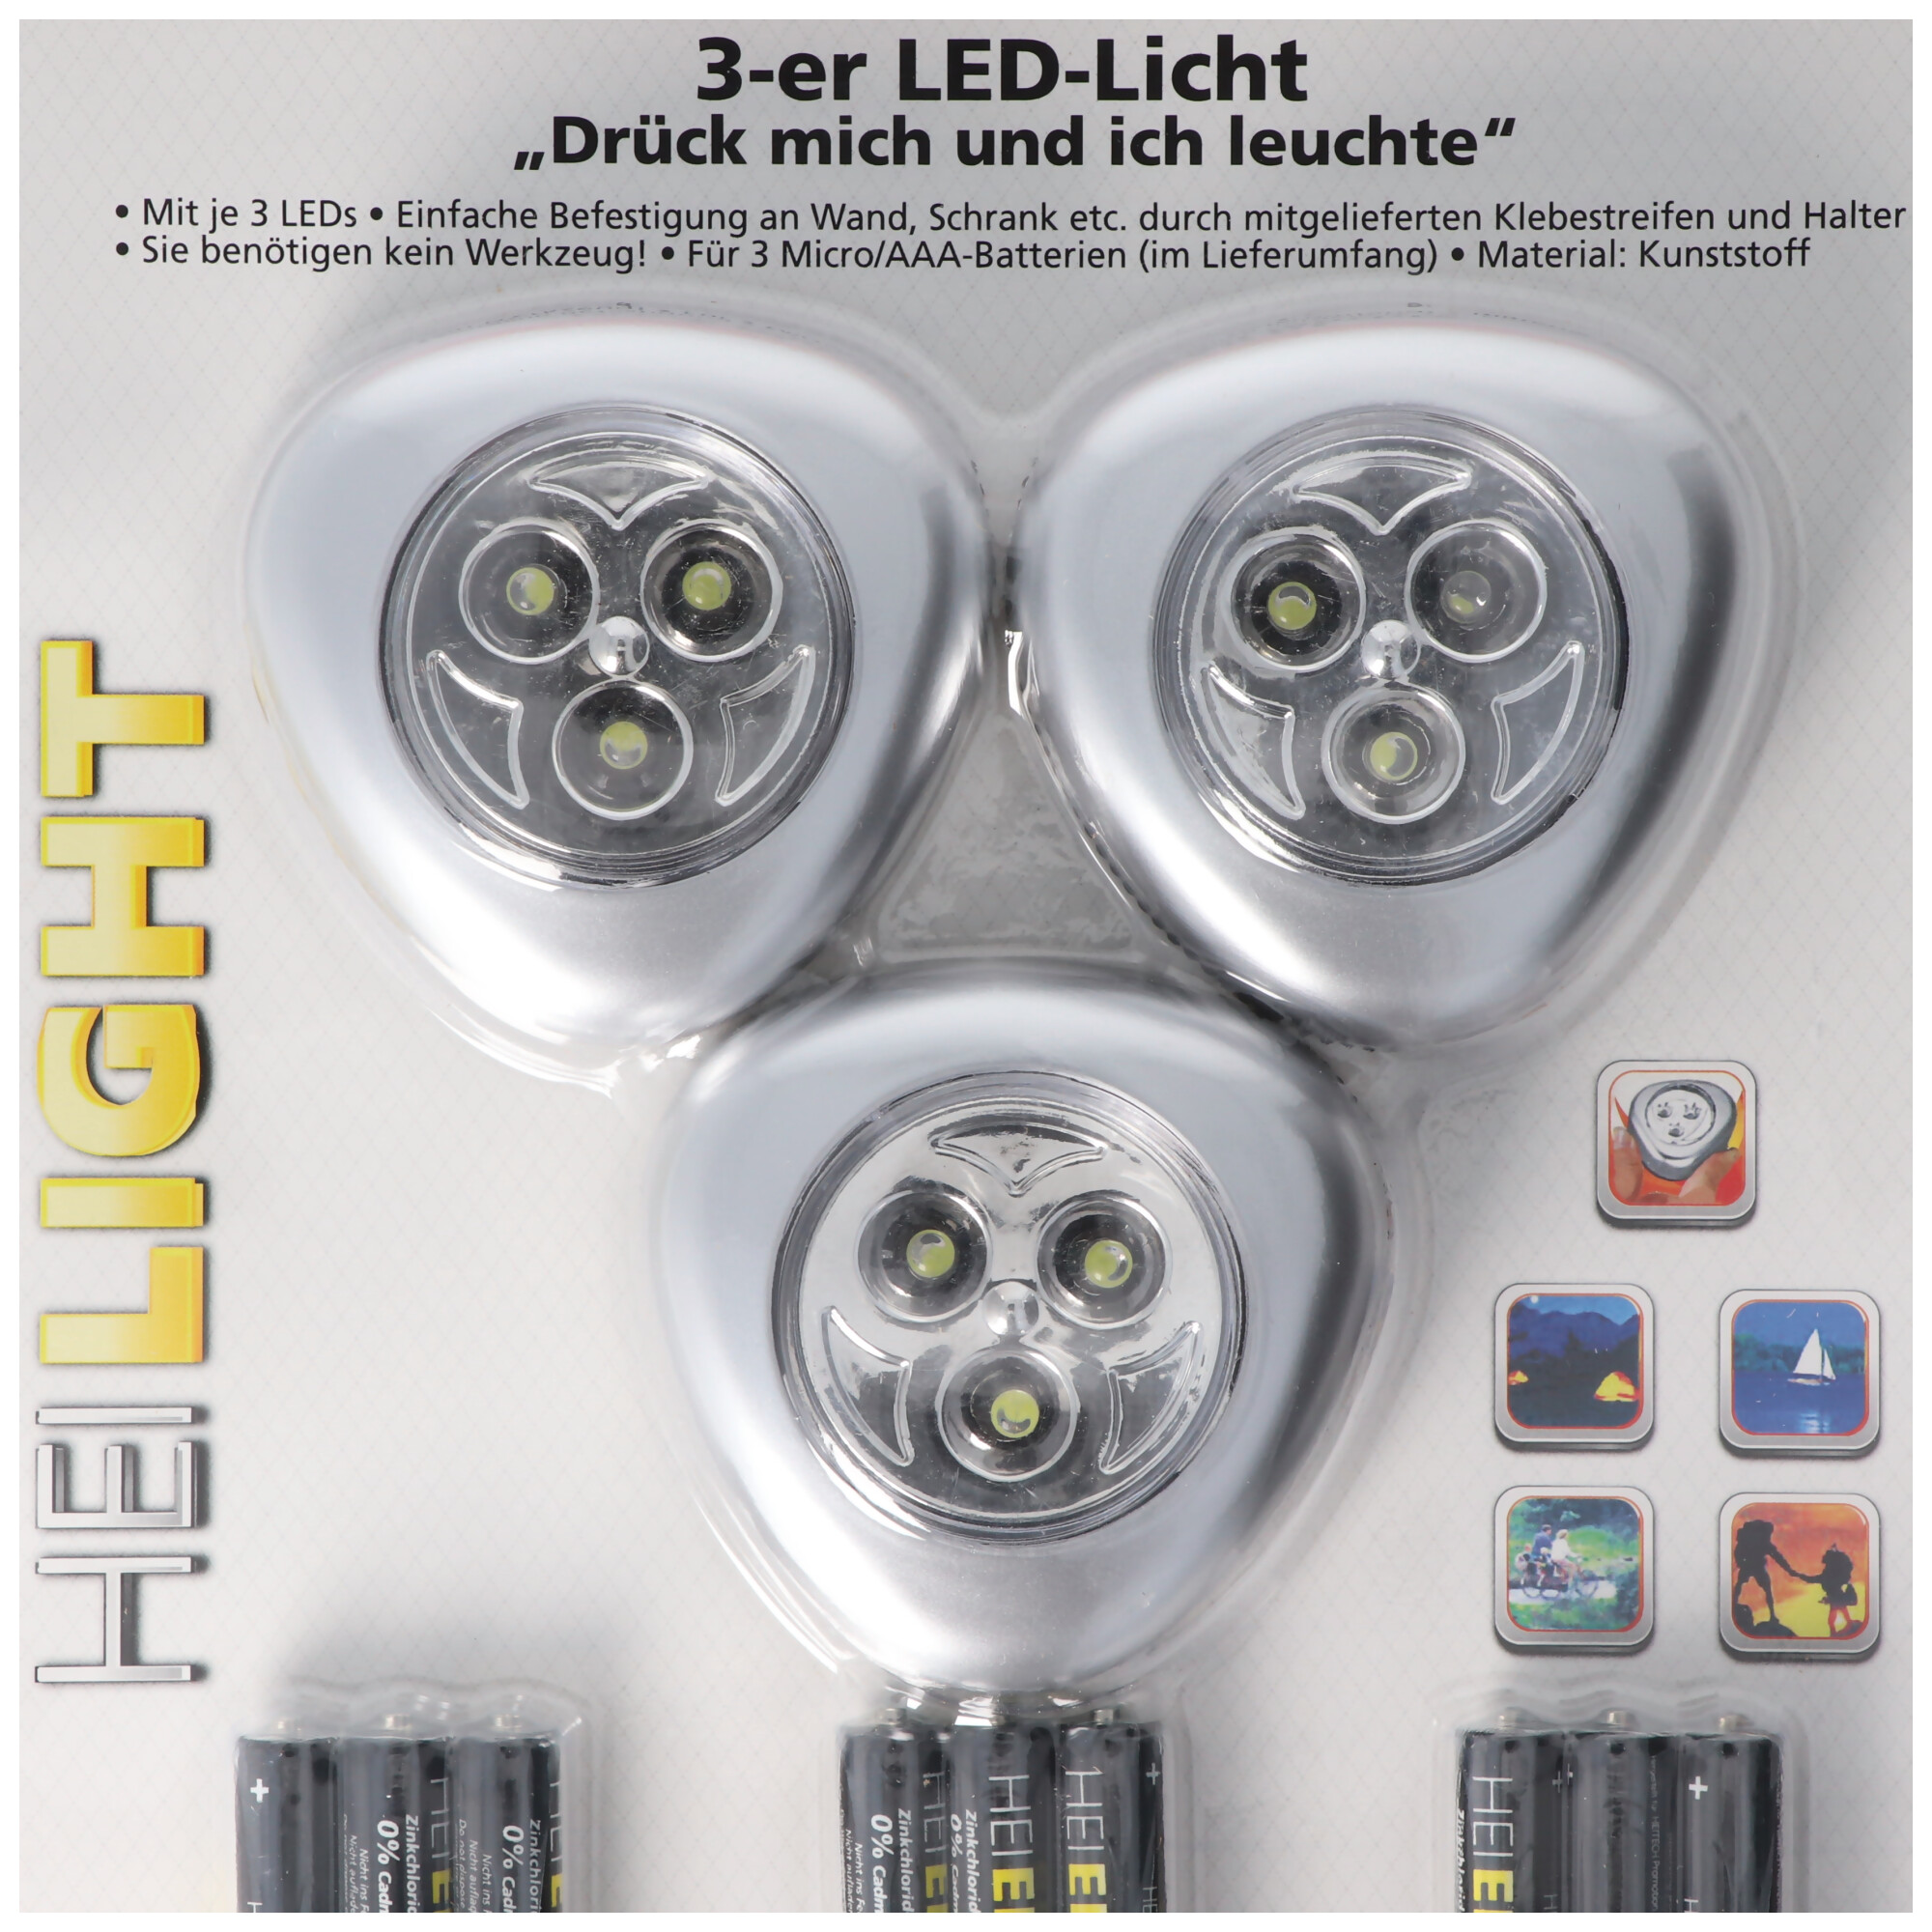 LED-Licht 3er-Set, Drück mich und ich leuchte, Mini LED-Leuchten, kabellos, inklusive Batterien